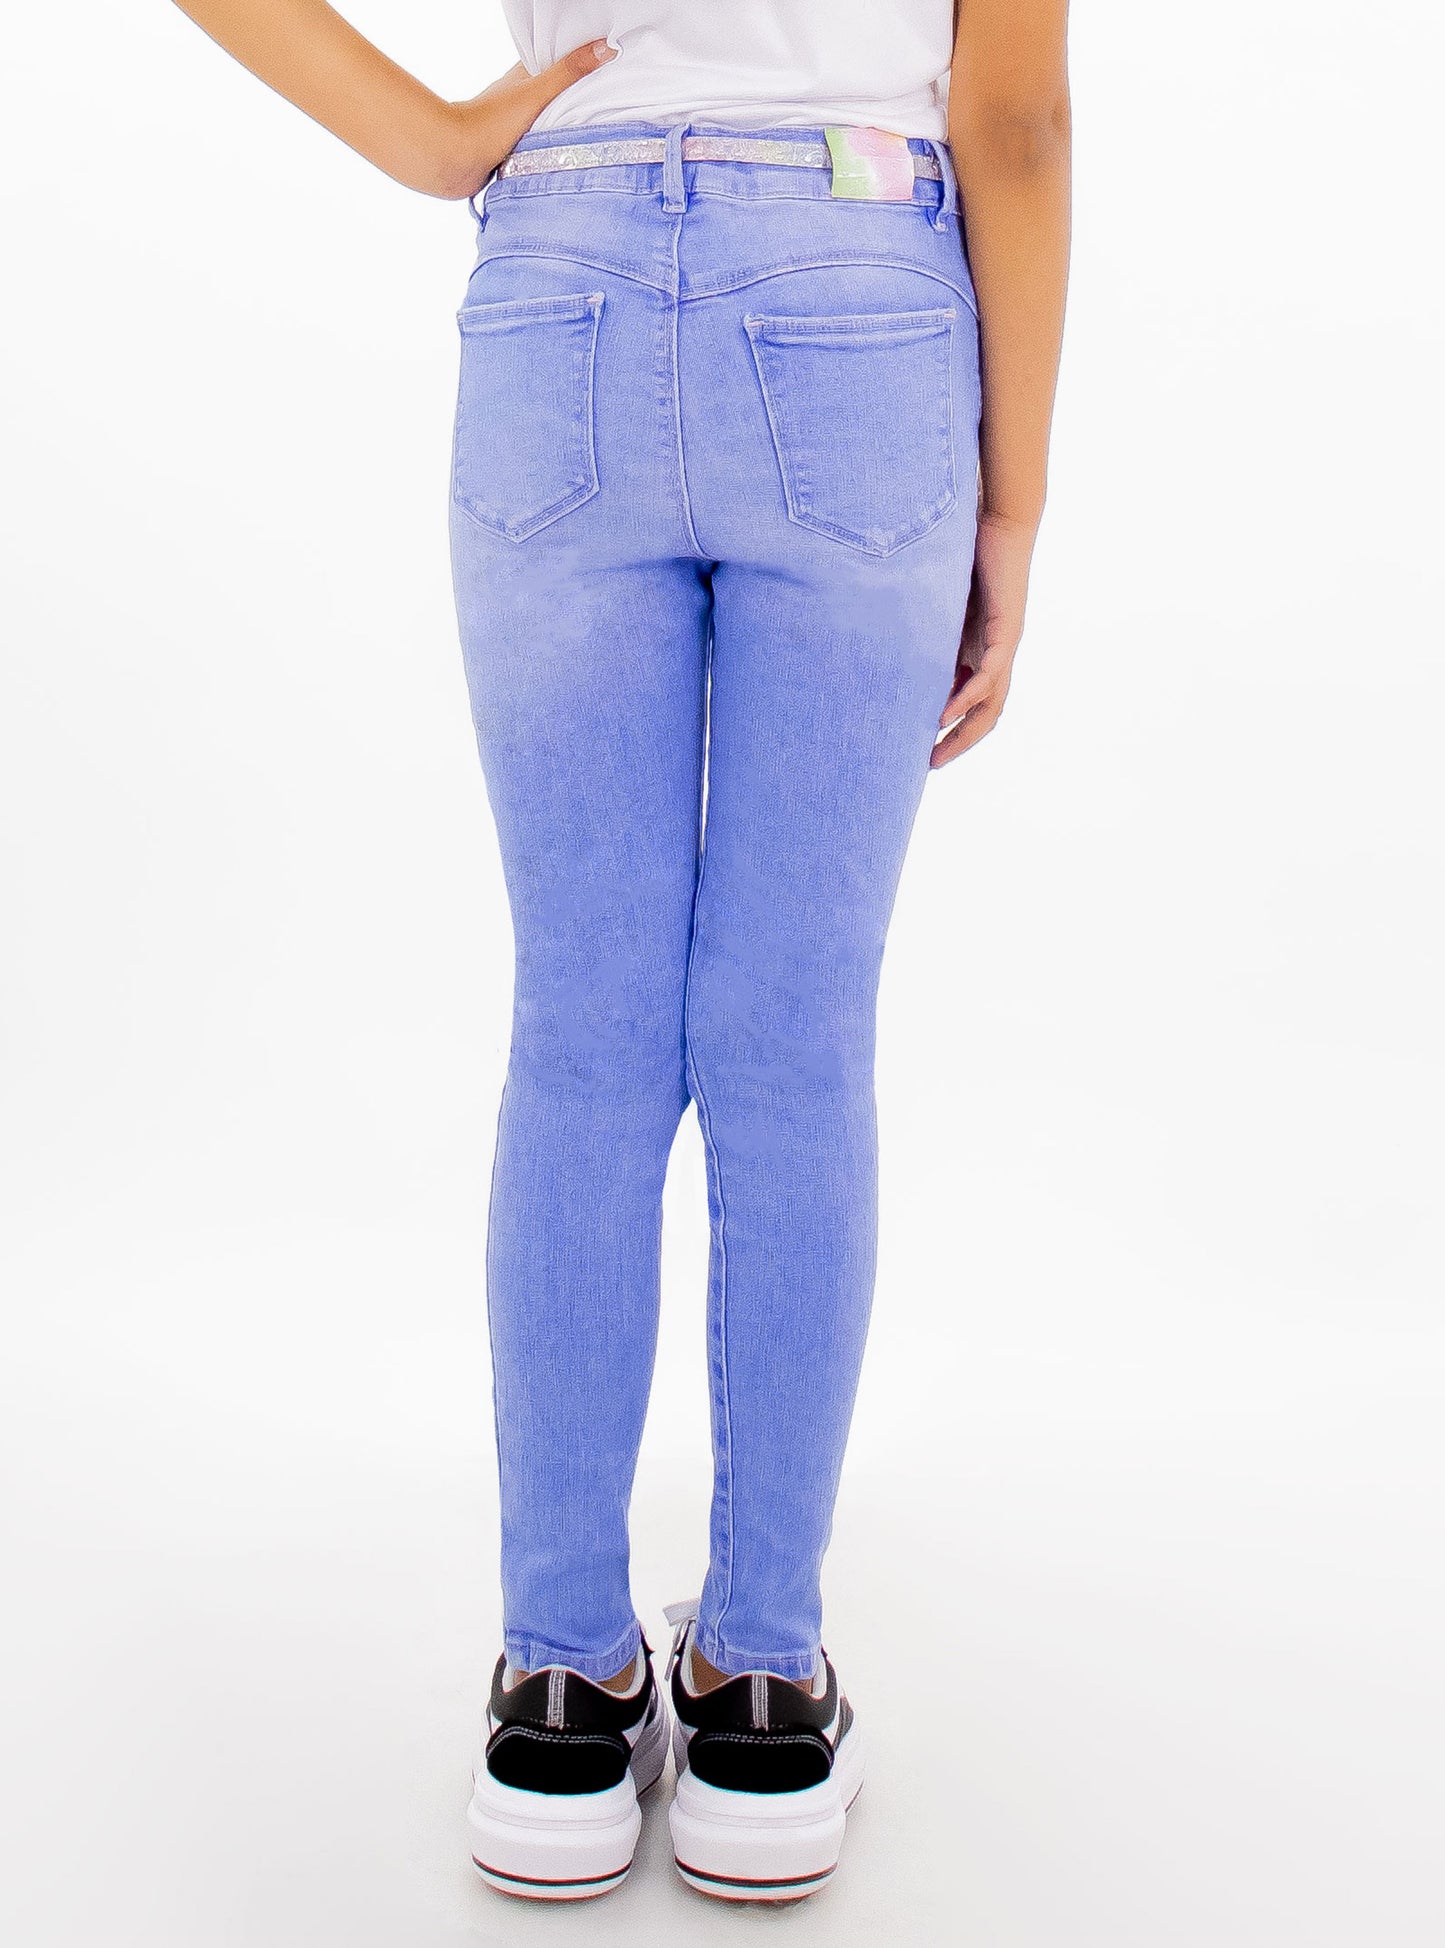 Jeans skinny de color azul claro con cinturón